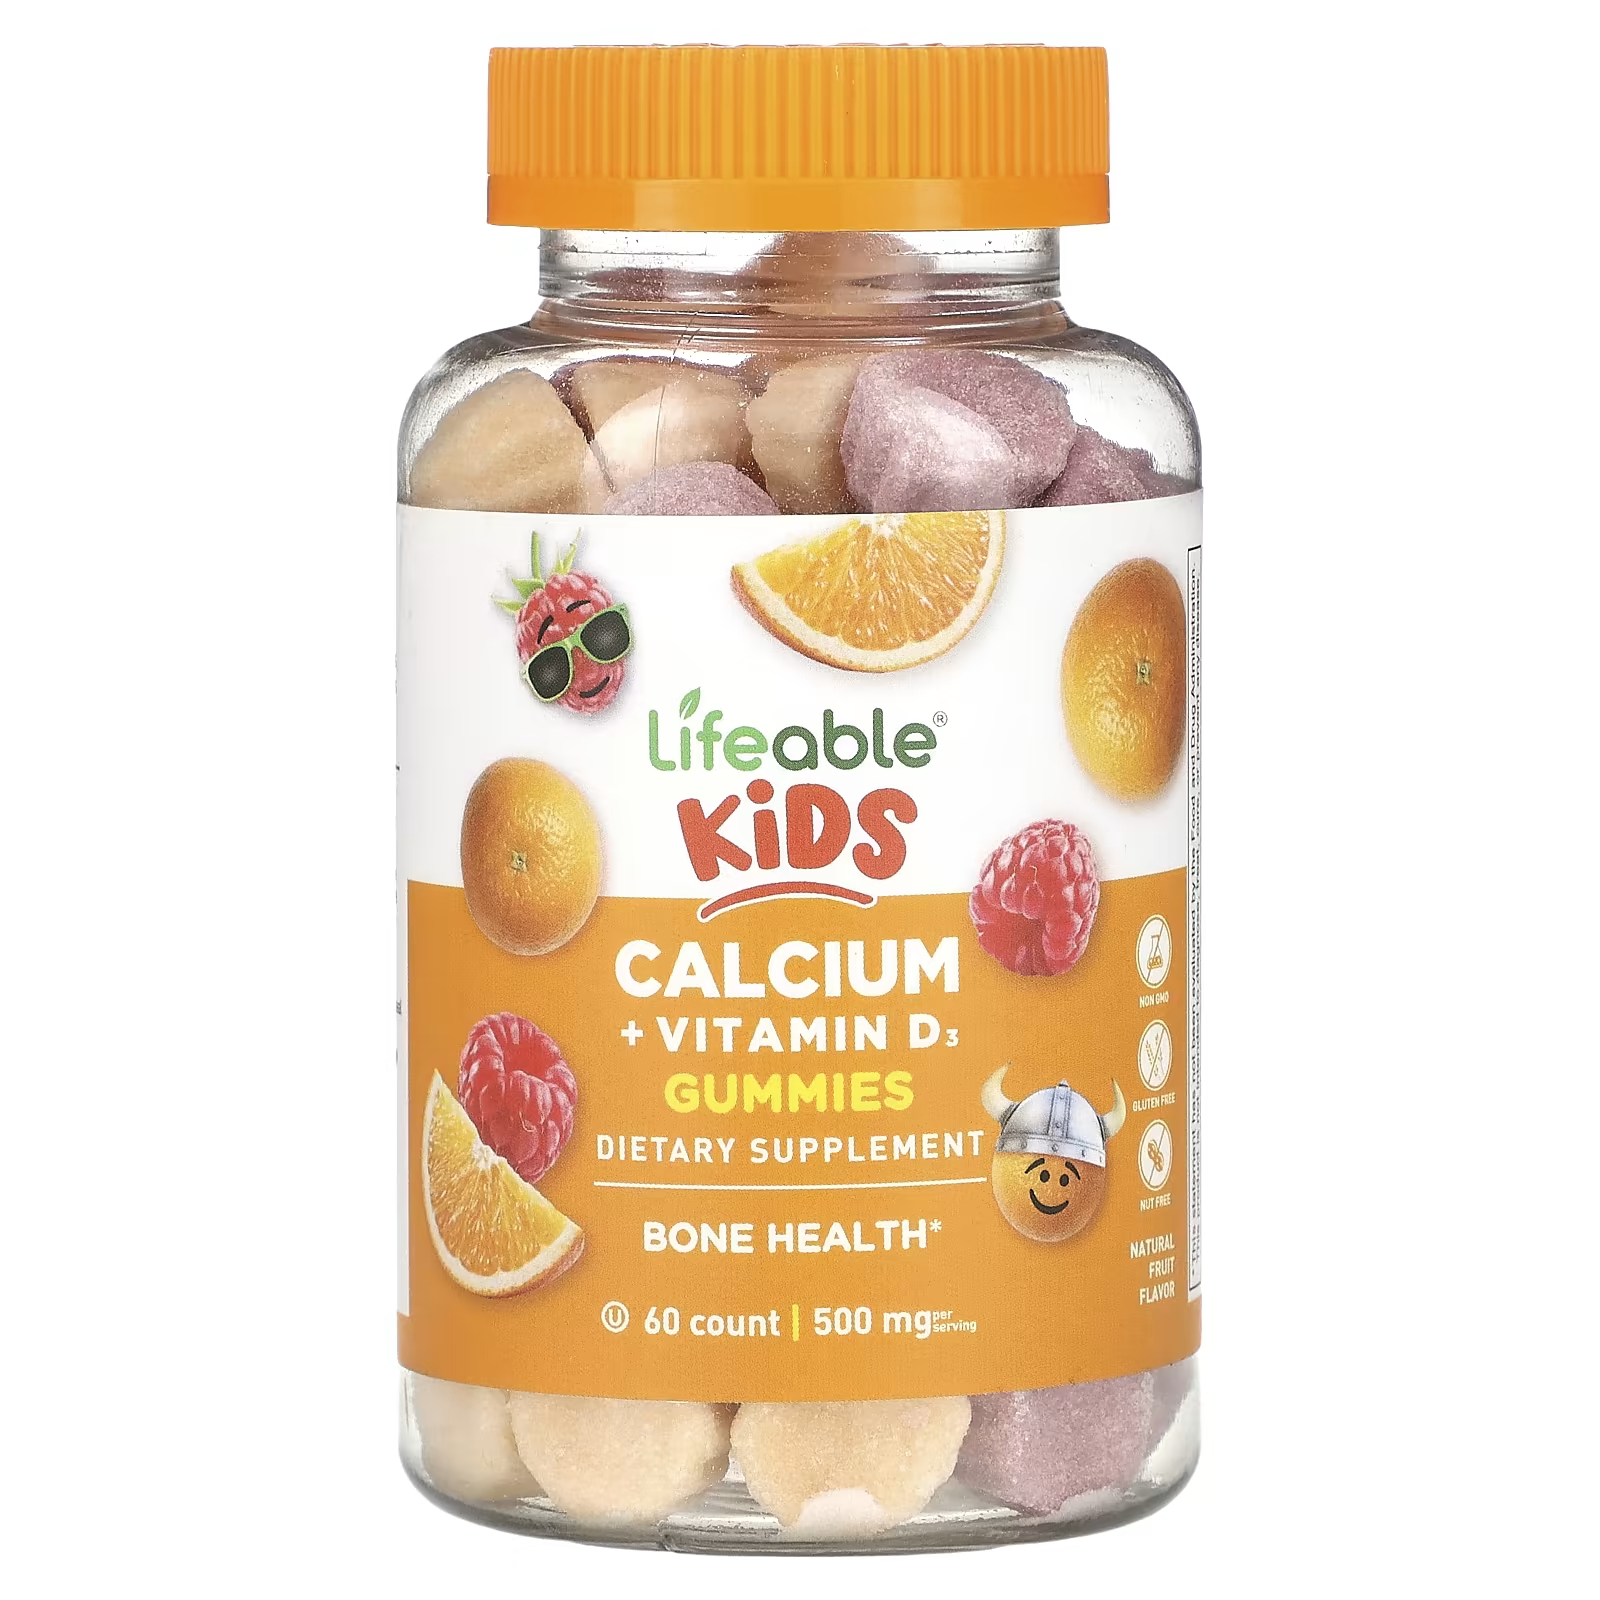 Пищевая добавка Lifeable Kids с кальцием и витамином D3, натуральные фрукты, 60 жевательных конфет пищевая добавка mrm nutrition с кальцием и витамином d3 апельсин и ягоды 60 жевательных конфет